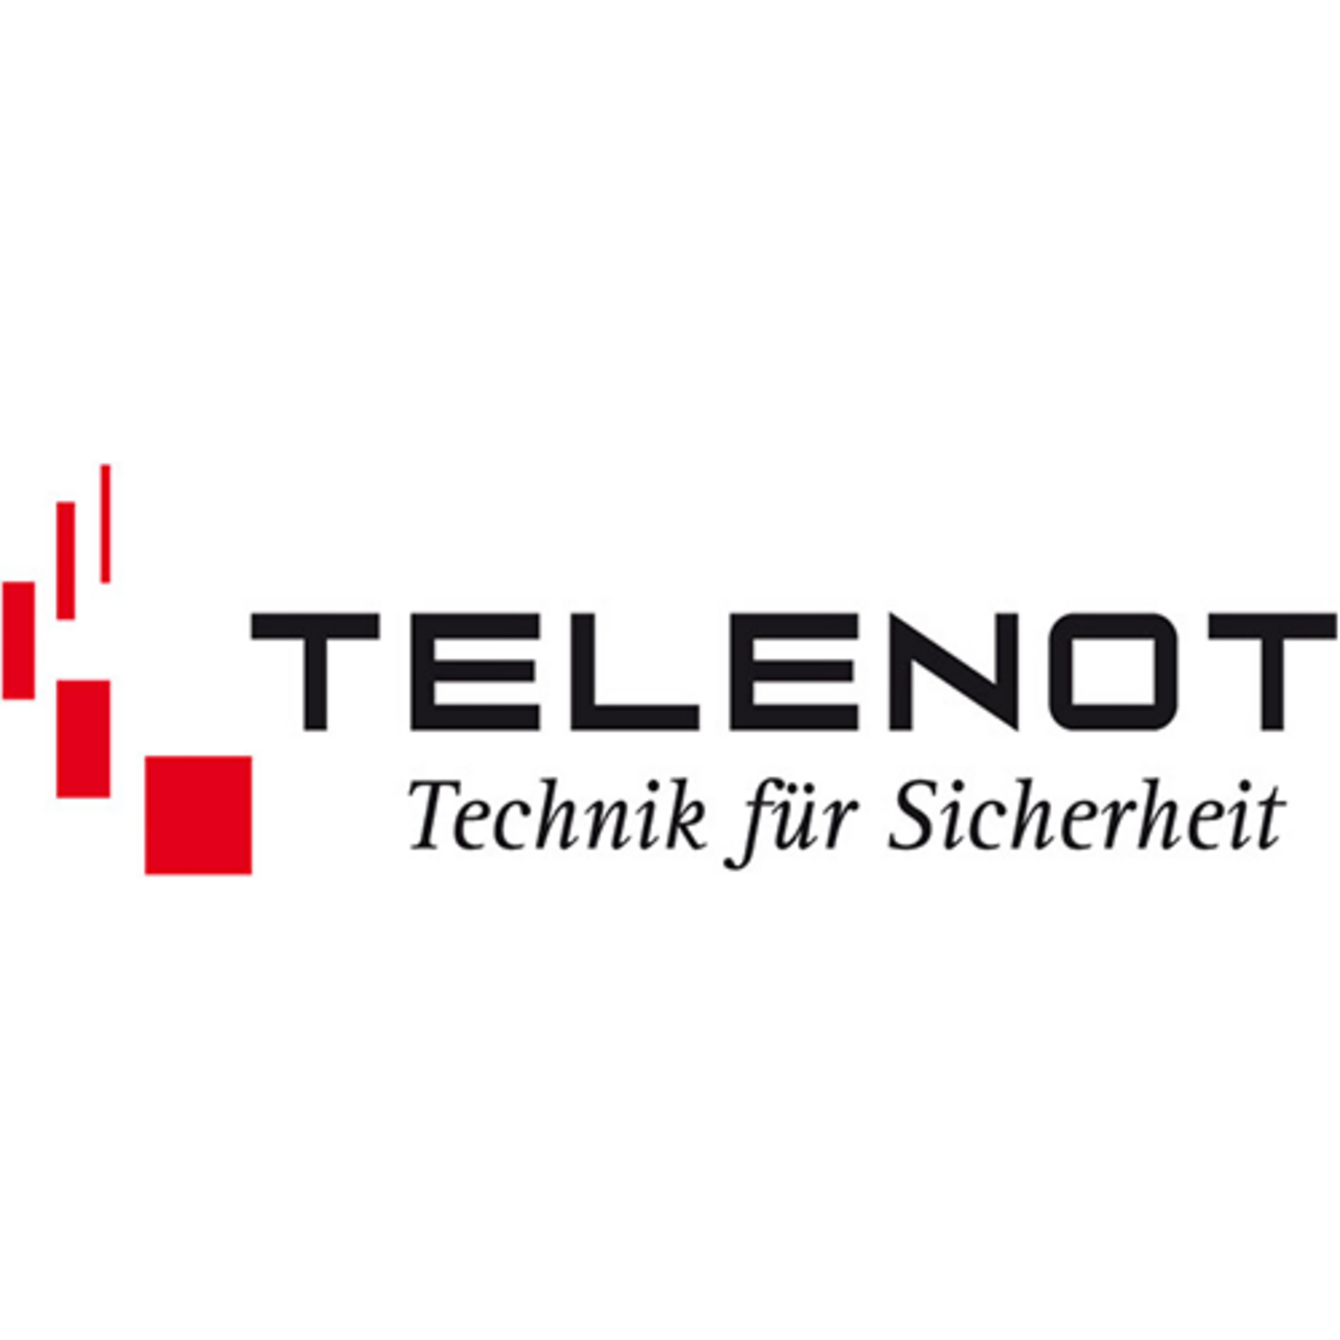 Telenot bei Marco Neumann Elektrotechnik in Barsbüttel